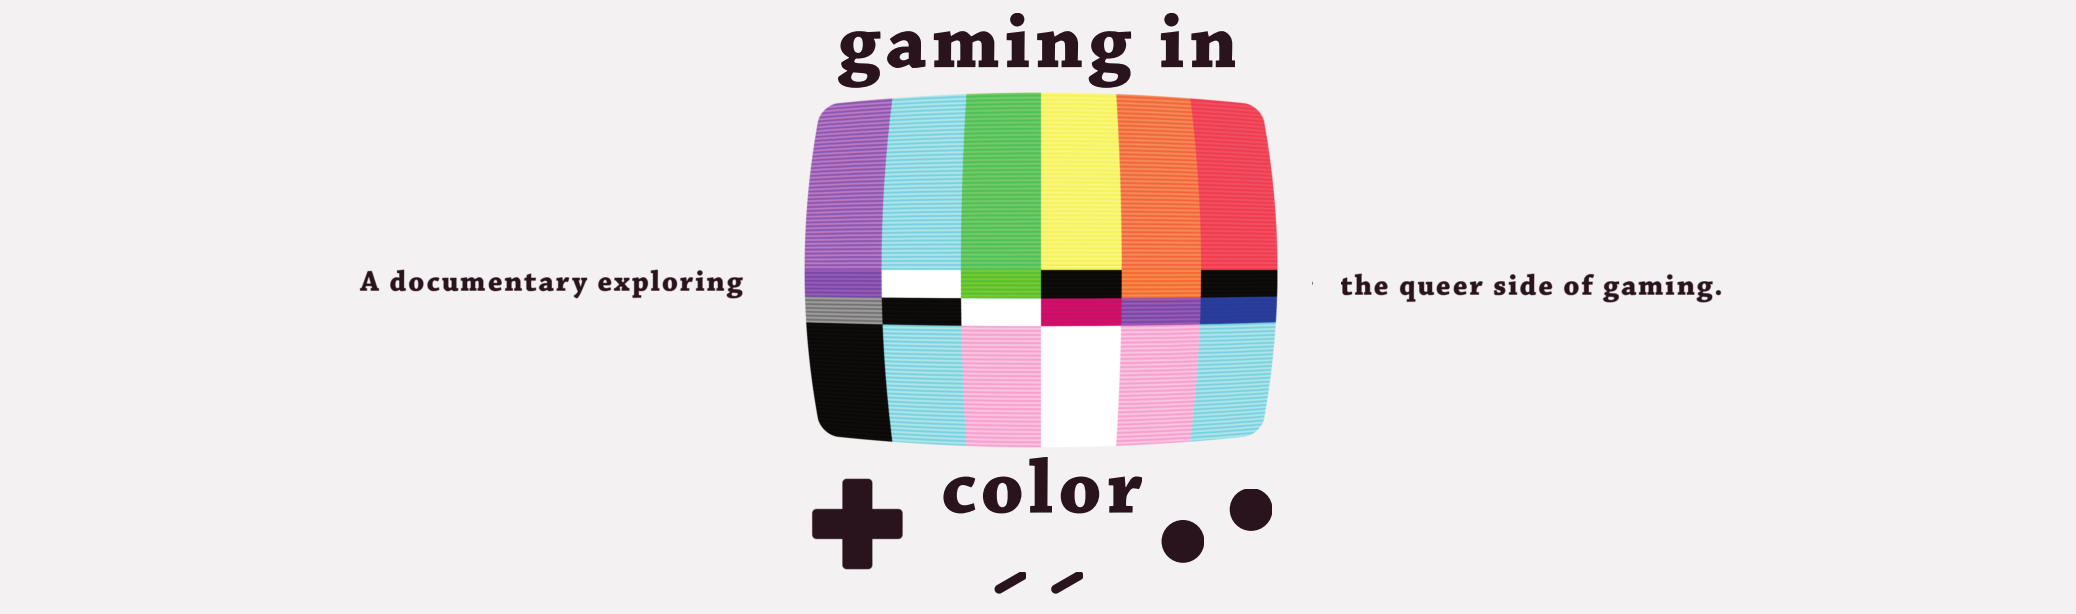 CMS Colloquium: Philip Jones: “Gaming In Color”